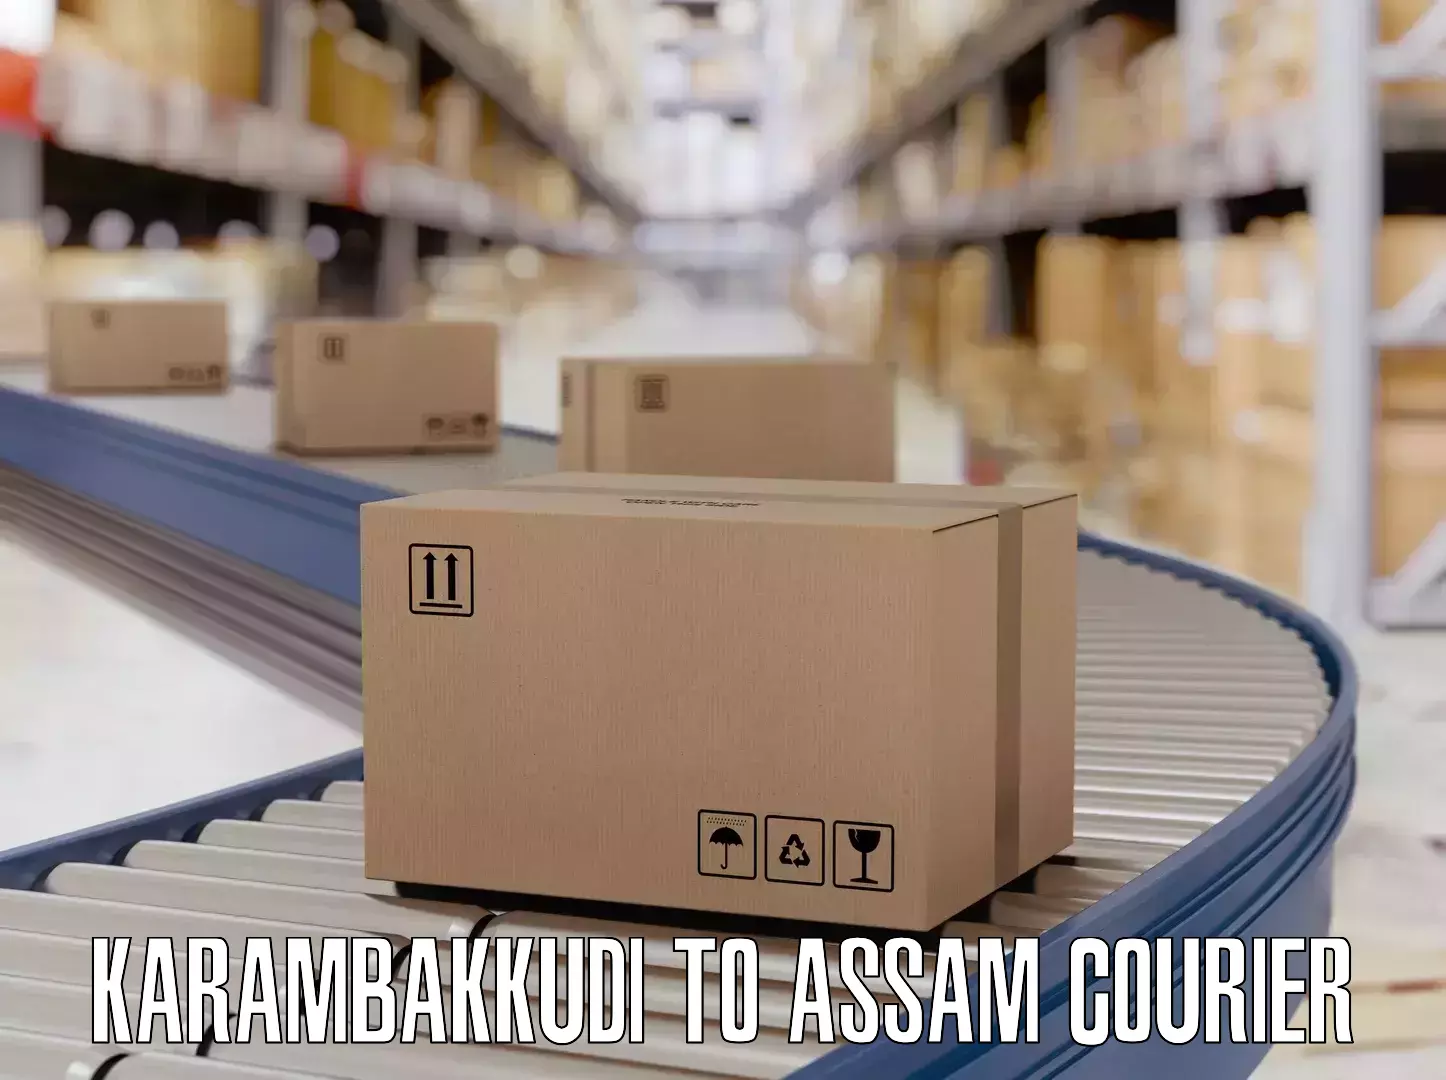 Baggage transport services Karambakkudi to Assam